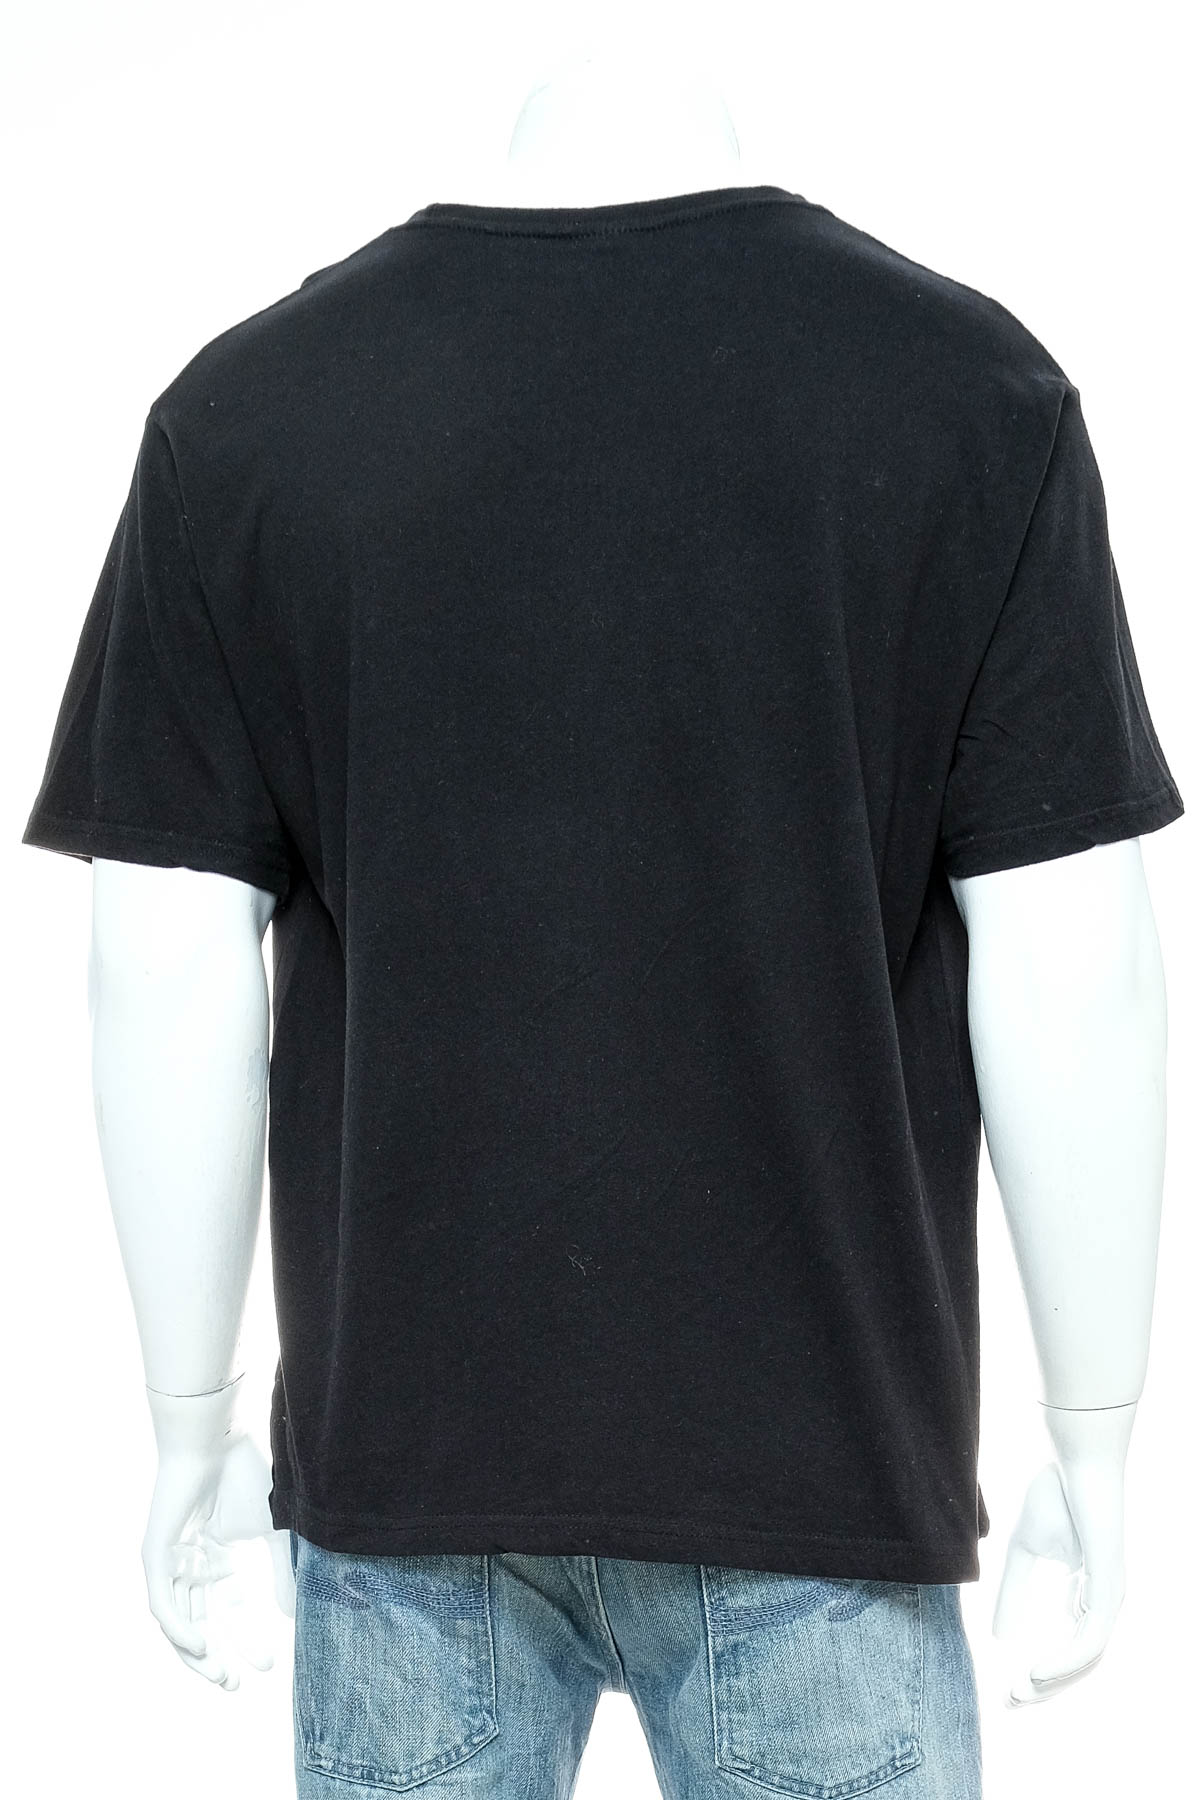 Αντρική μπλούζα - Briatore - 1